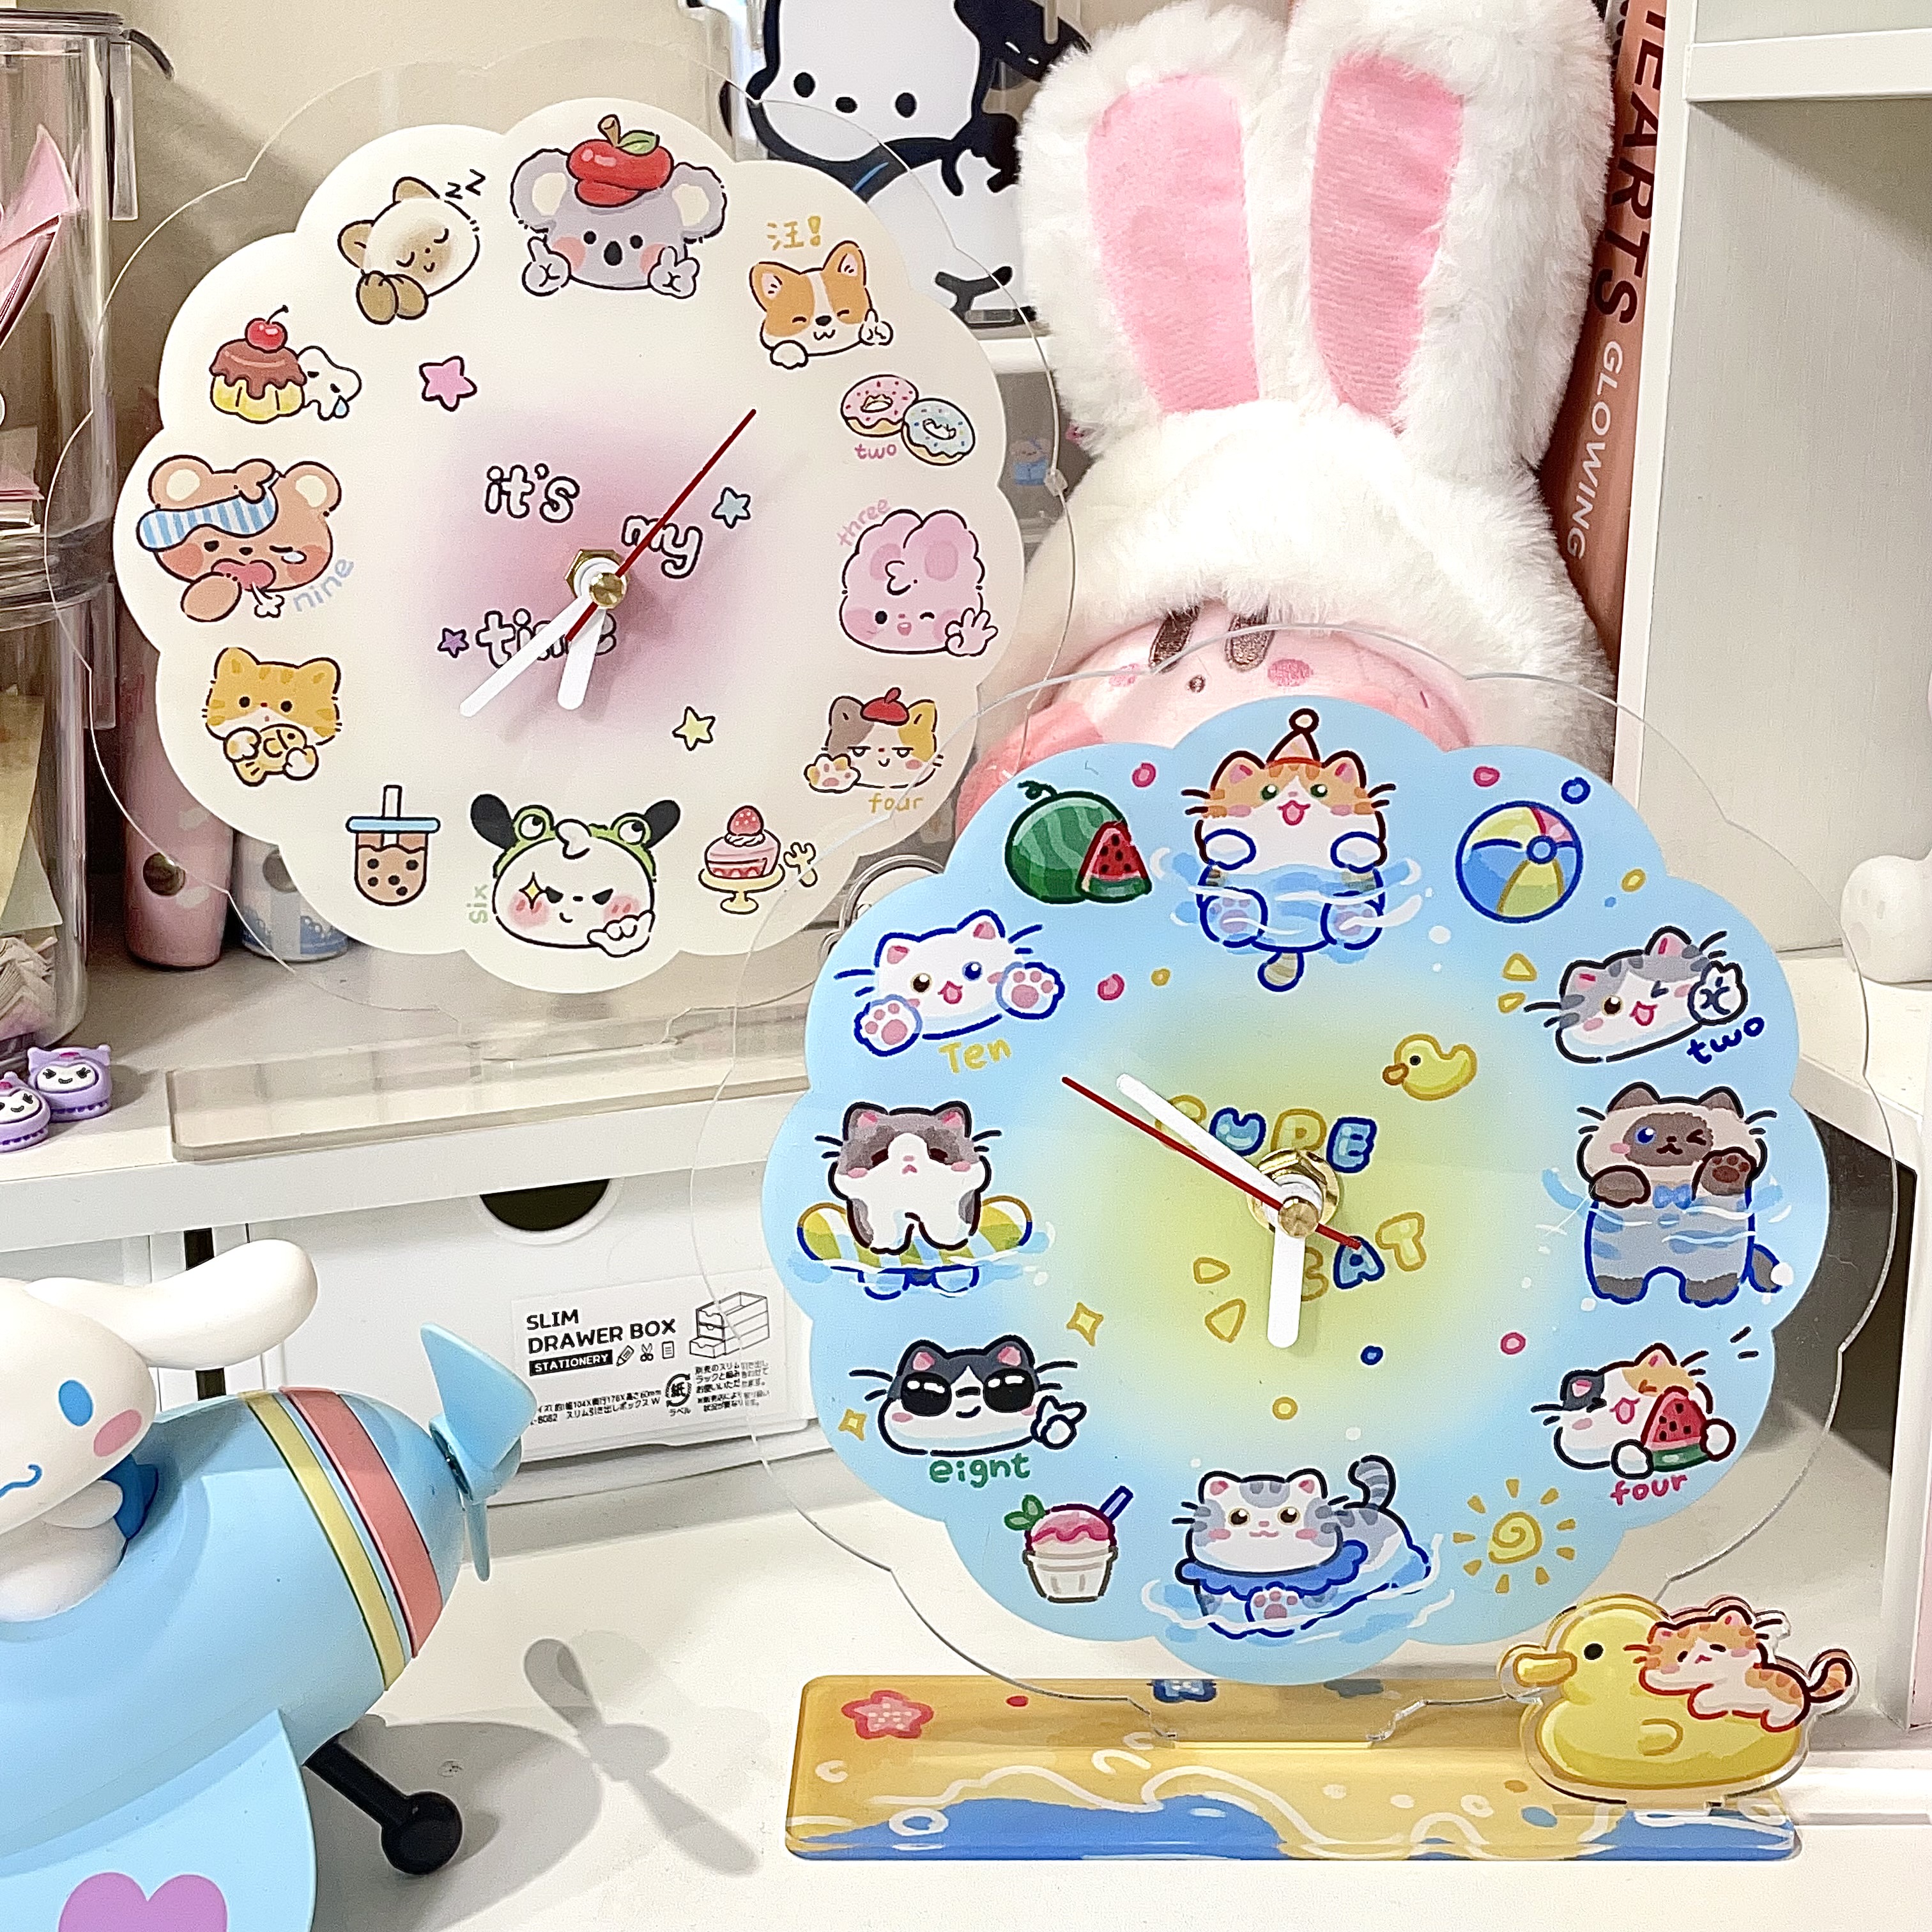 卡通貓咪狗狗桌面時鐘 塑料材質創意裝飾禮物 (8.3折)